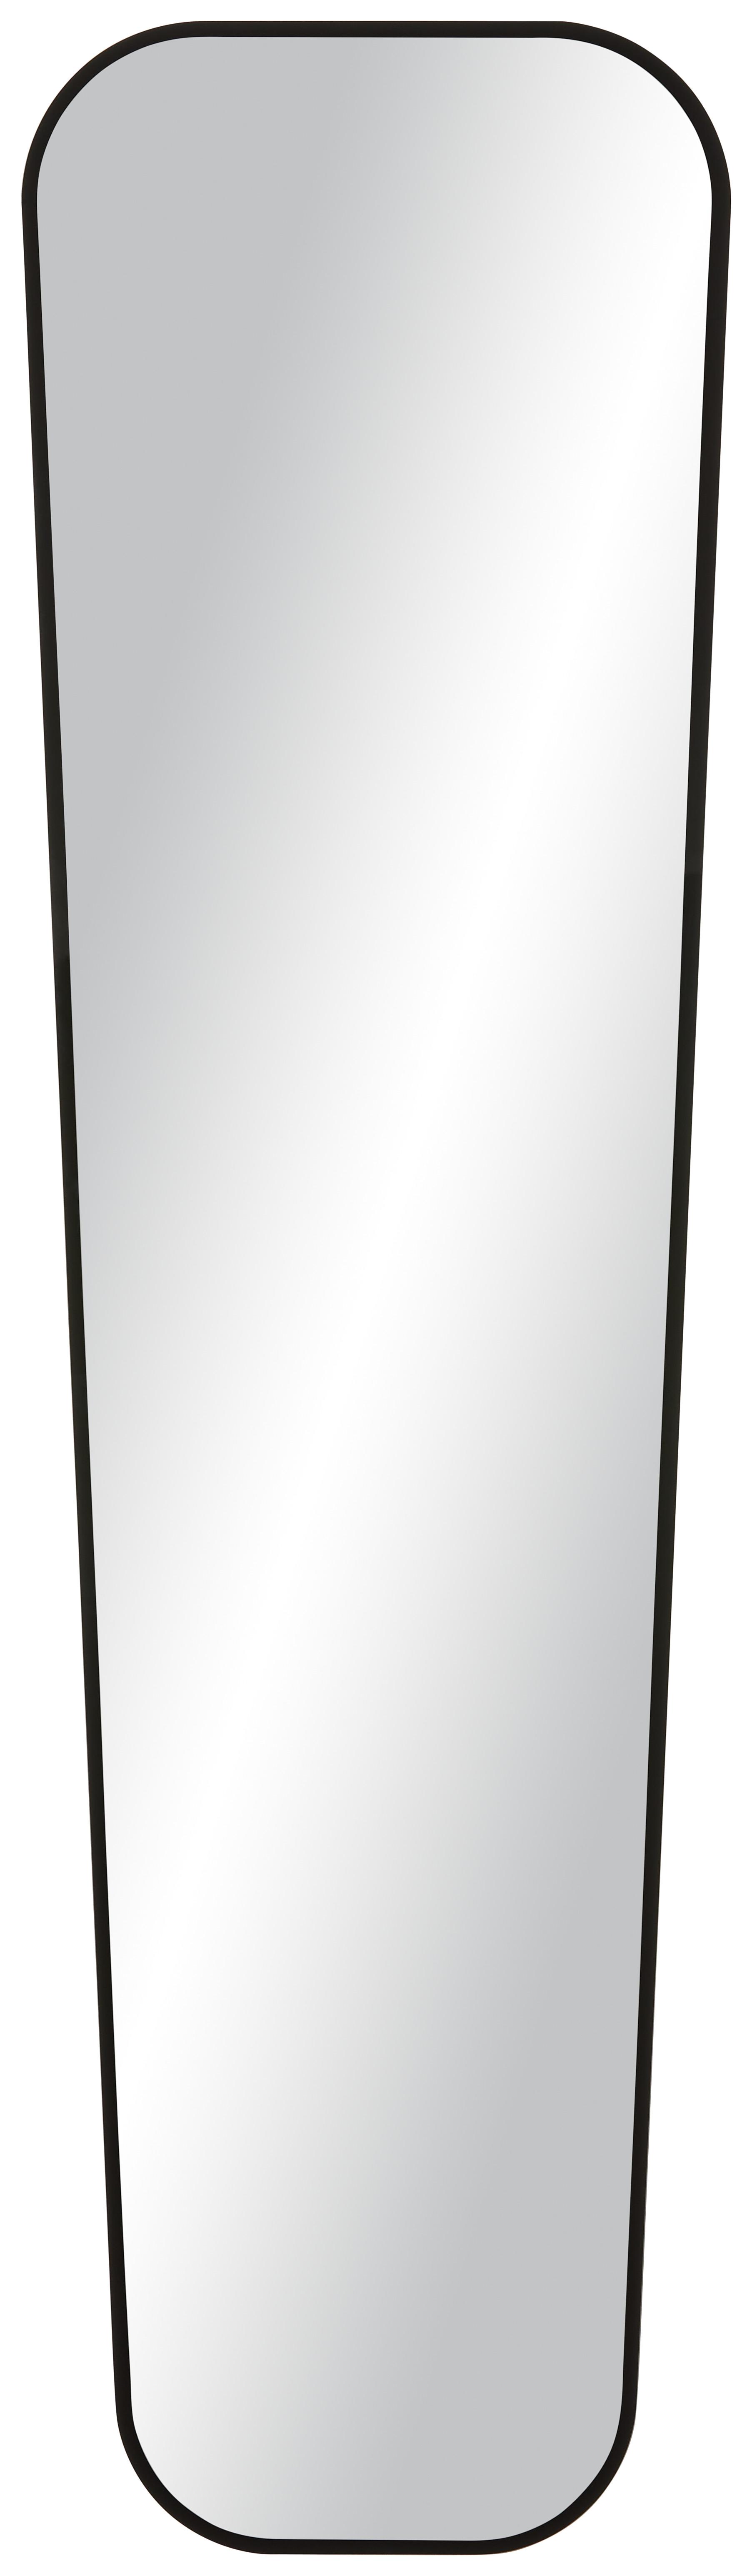 Spiegel in Schwarz - MODERN, Glas (35/125cm) - Modern Living